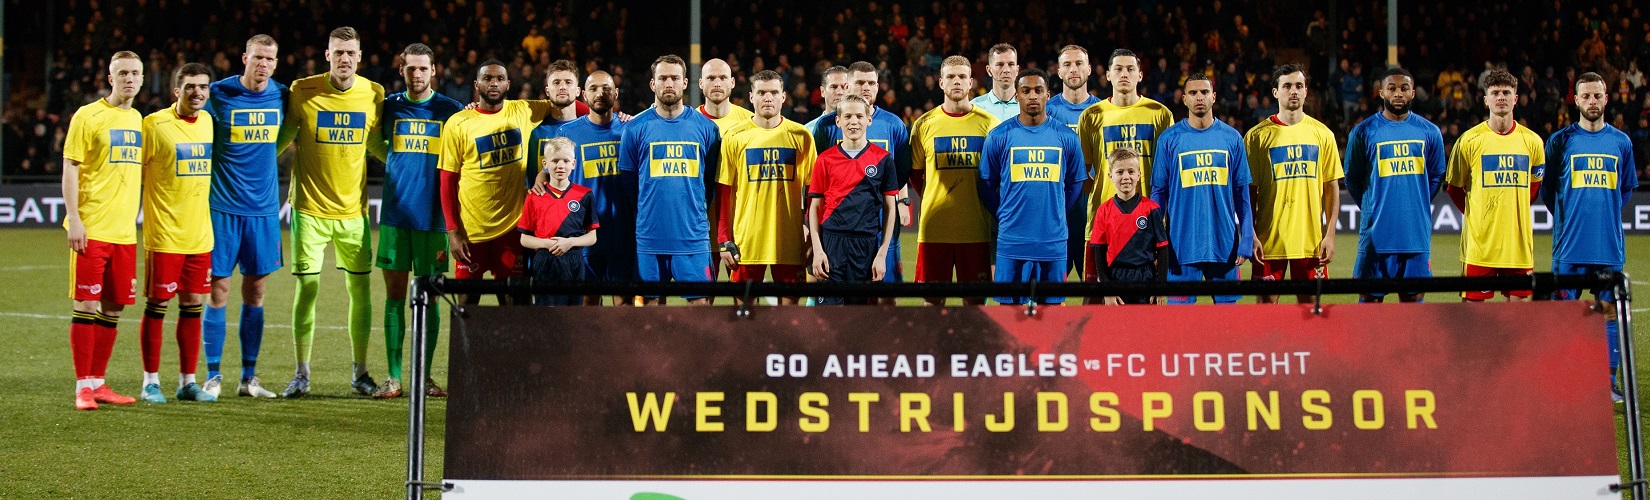 Go Ahead Eagles Fc Utrecht (3) Header